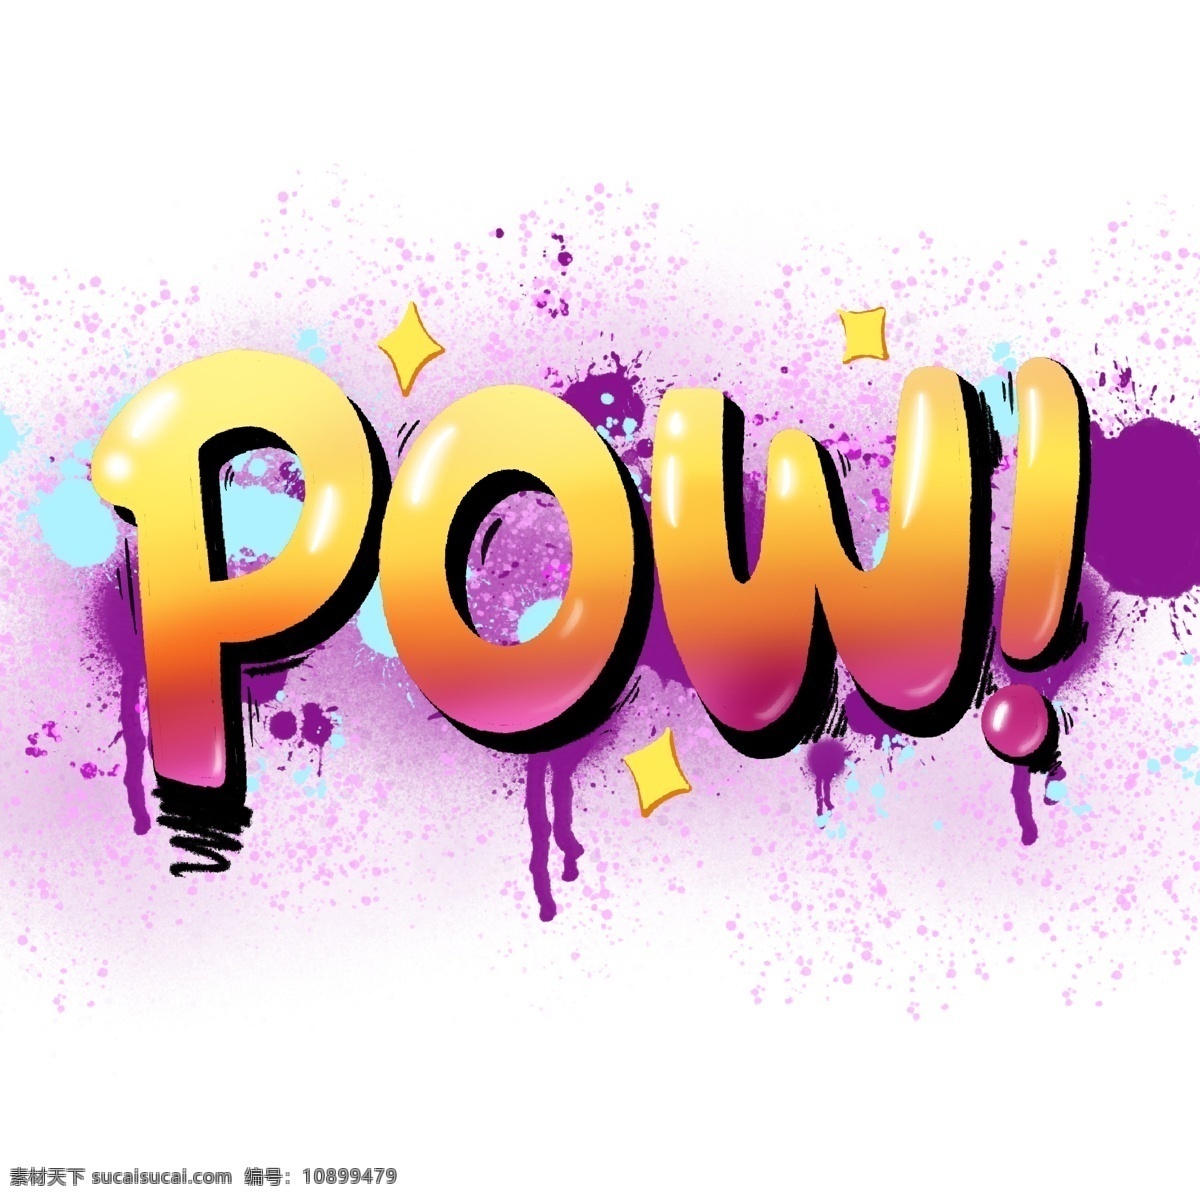 颜色 撞击 pow 冲击 涂鸦 喷墨 紫色 黄色 渐变 喷溅 四散 高光 发光 字体